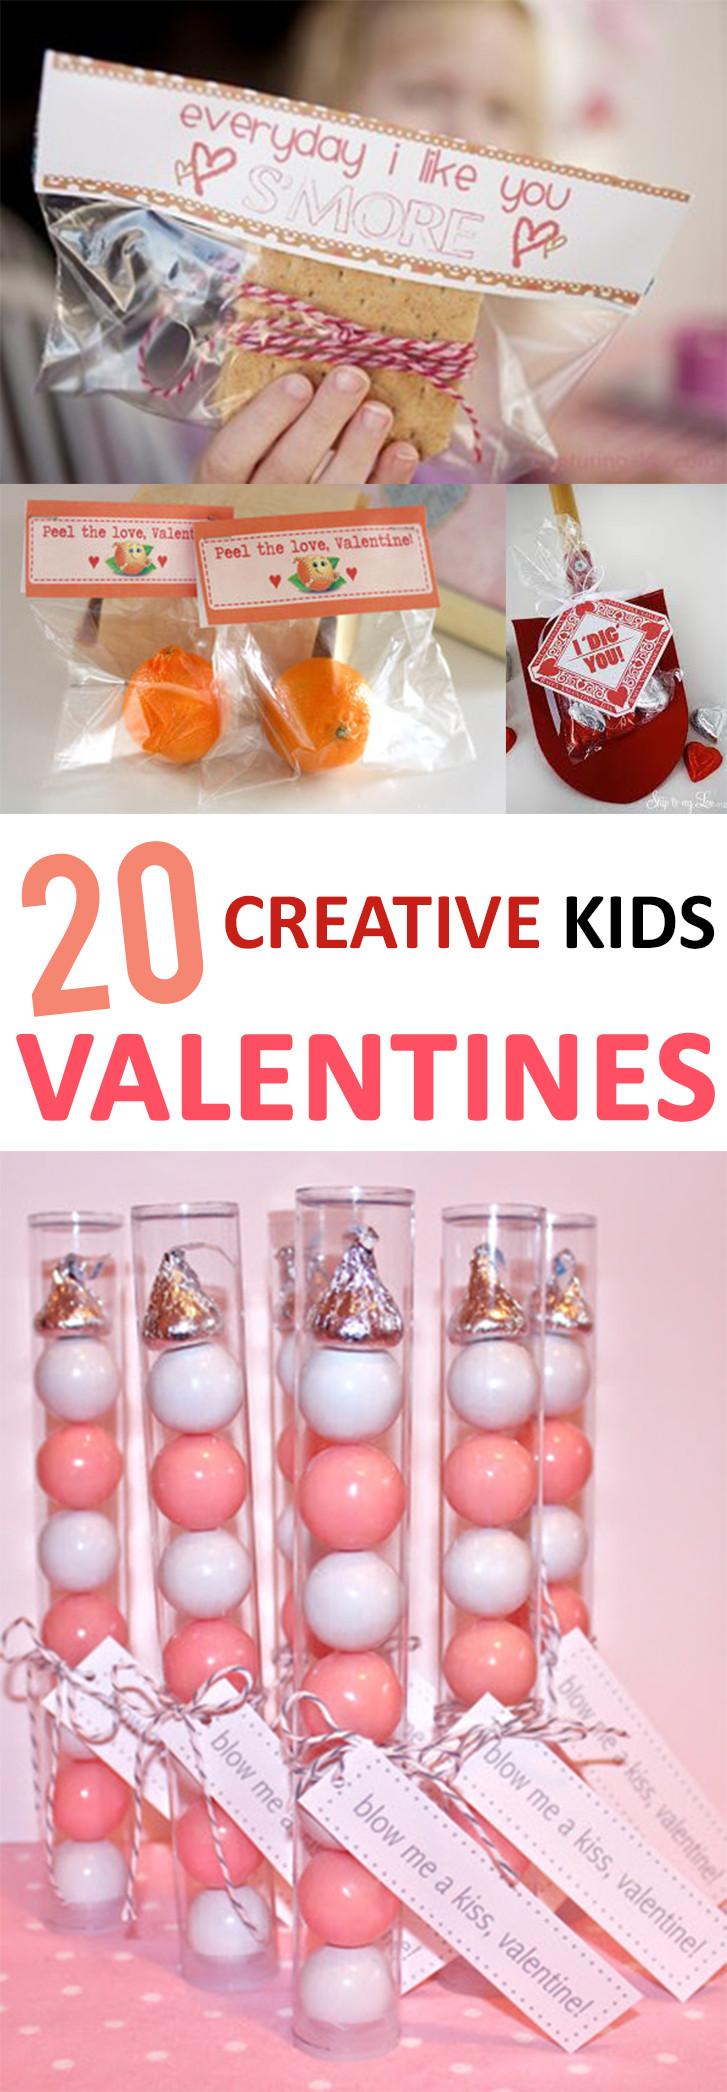 Valentine Day Creative Gift Ideas
 20 Creative Kid s Valentines